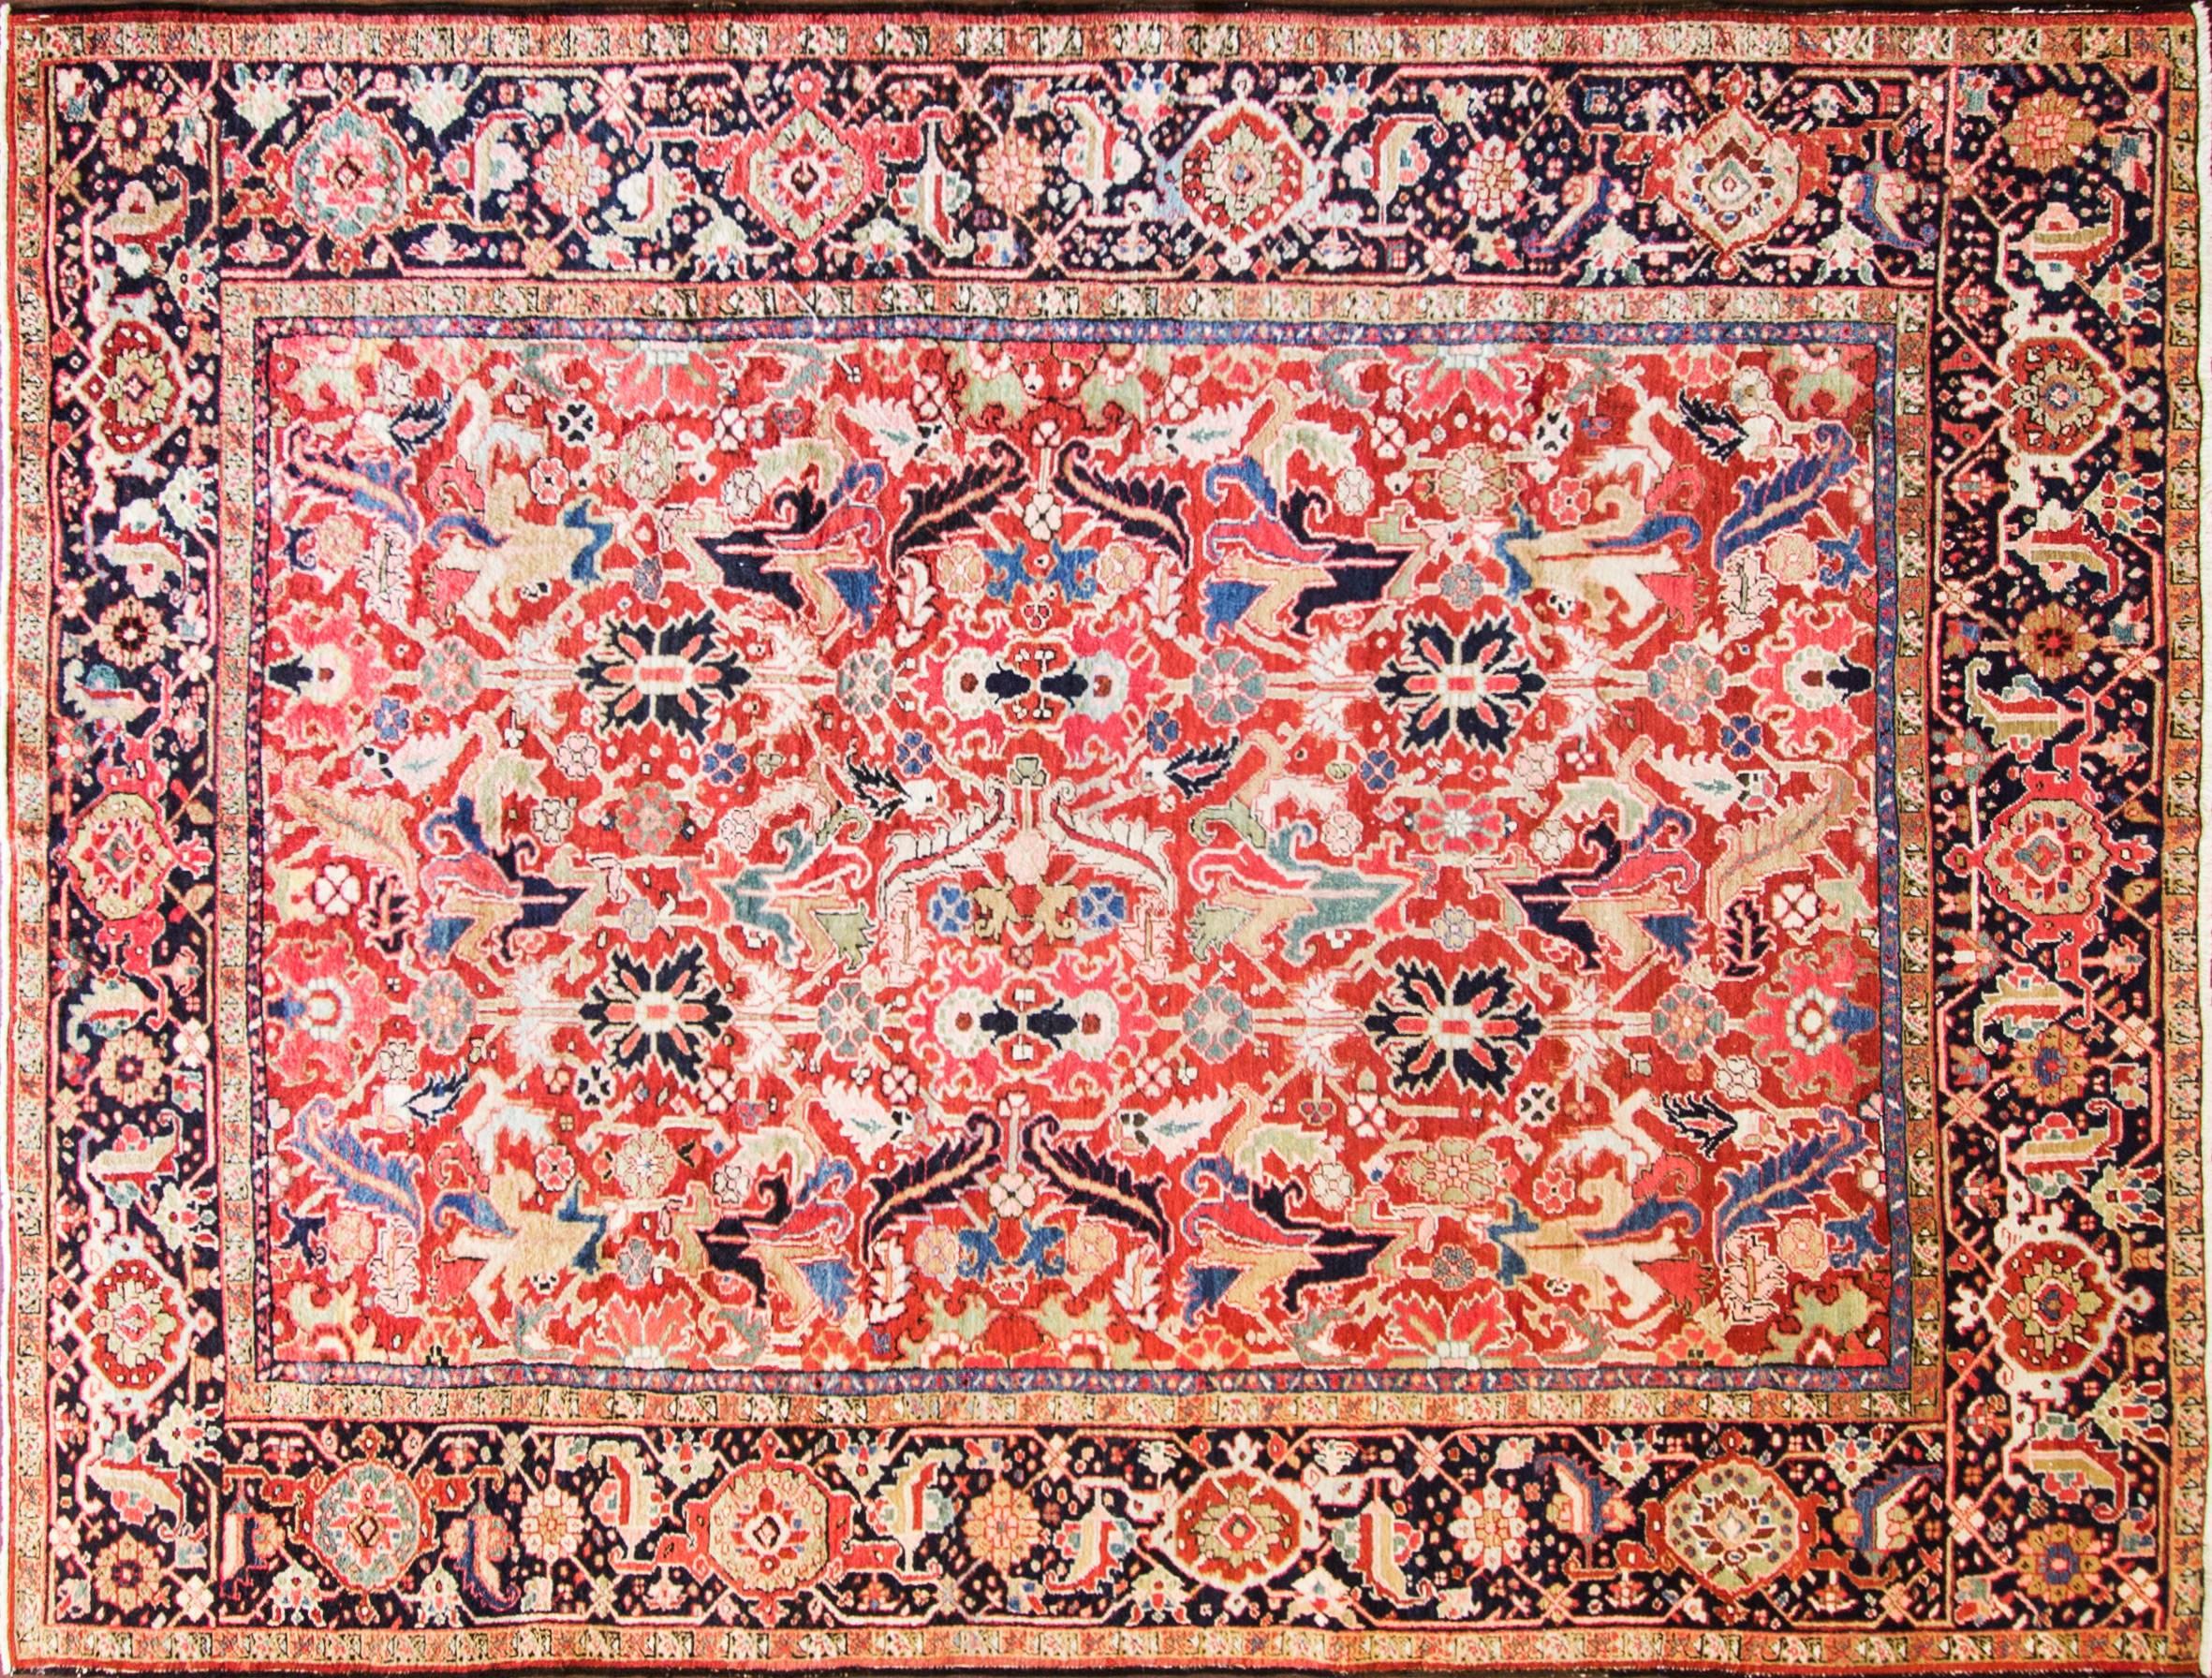 Magnifique tapis ancien persan Heriz avec un design all-over et une couleur de fond rouge brique à couper le souffle. Les tapis Heriz sont des tapis persans provenant de la région de Heris, en Azerbaïdjan oriental, dans le nord-ouest de l'Iran, au